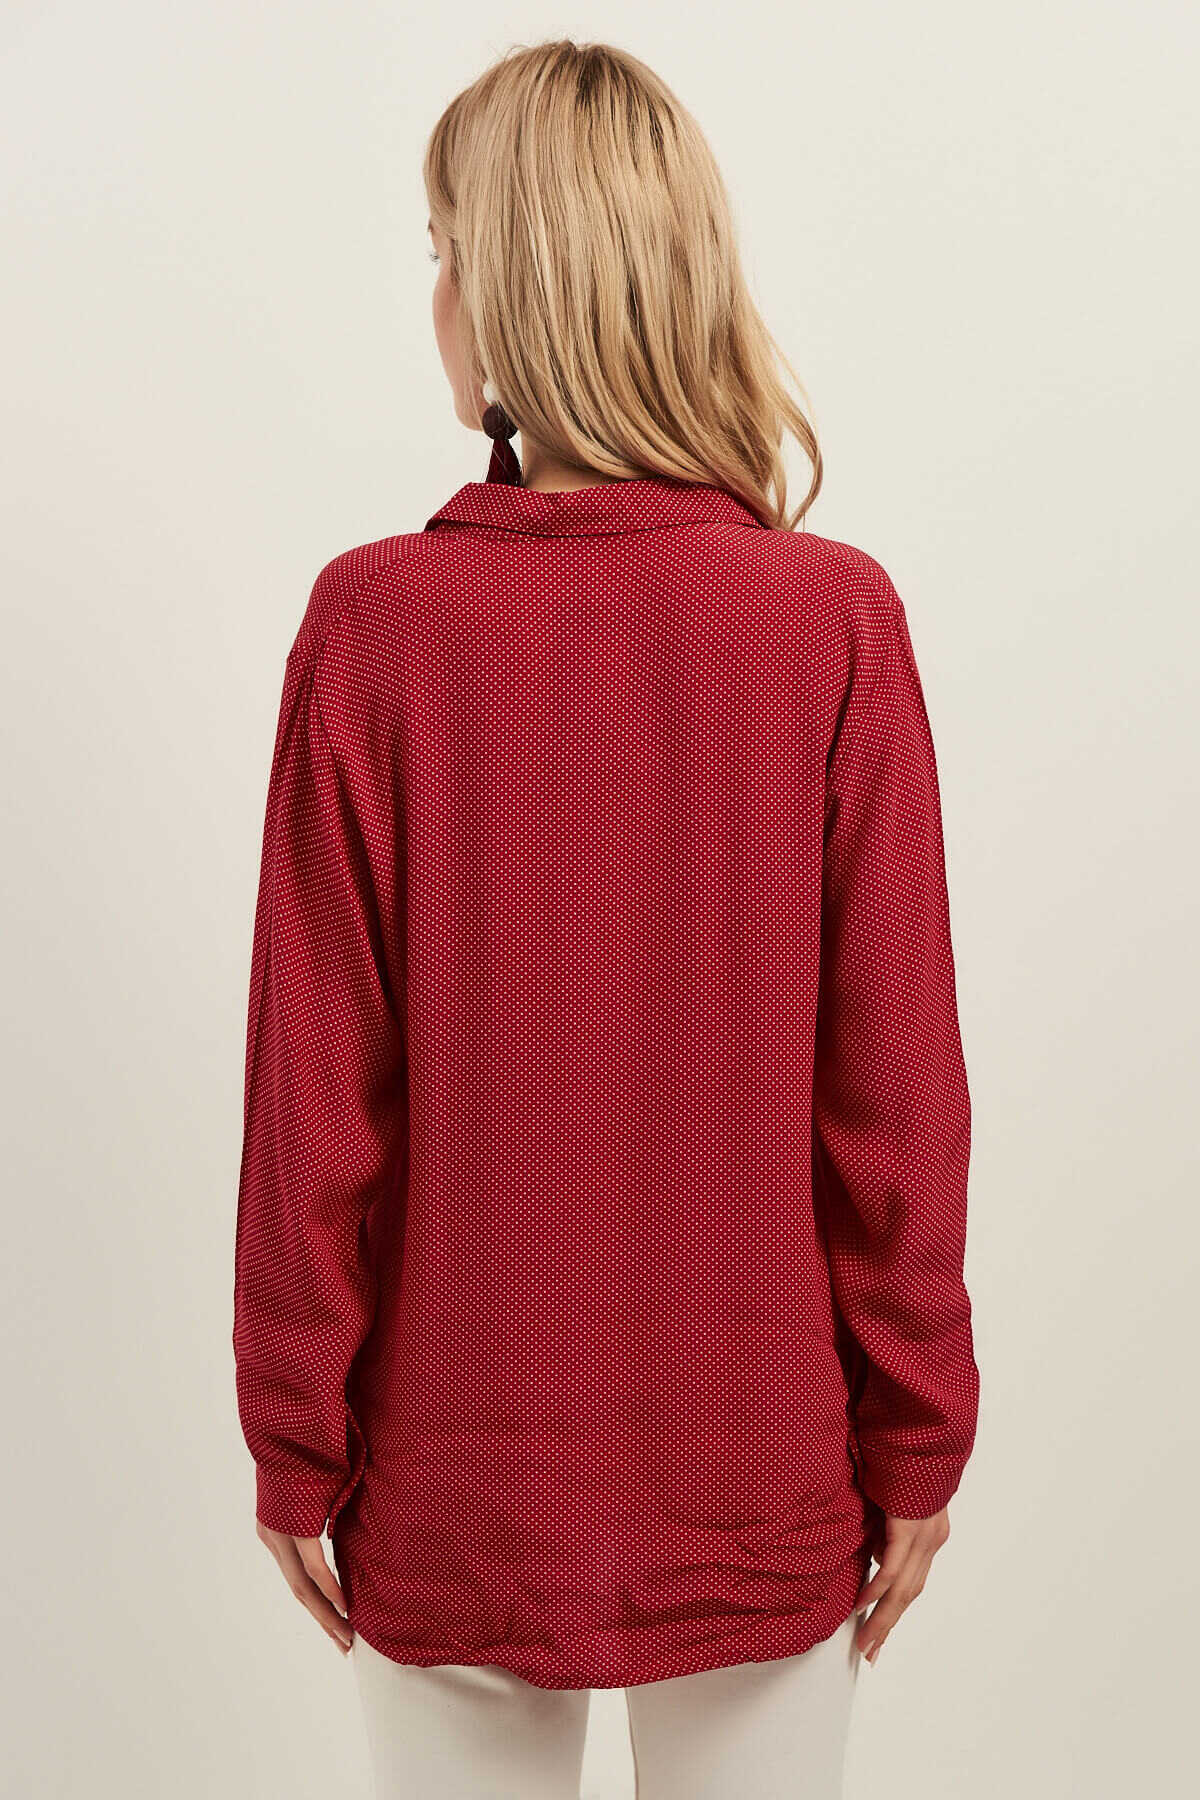 پیراهن یقه کلاسیک زنانه طرح خال خالی قرمز برند Olalook